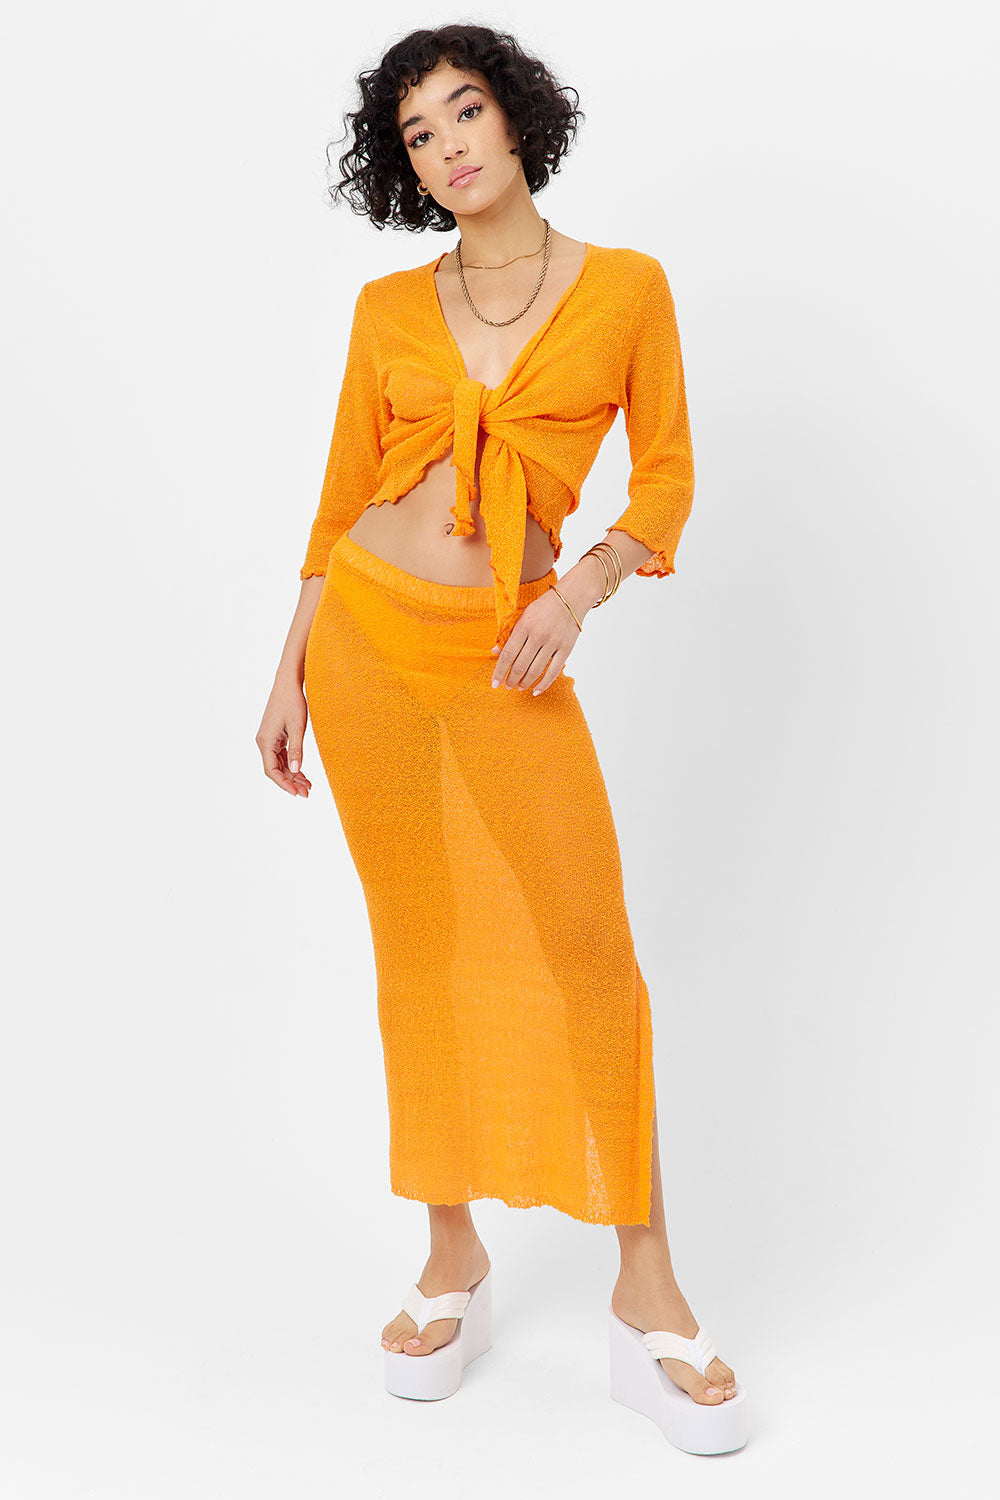 Hilary Knit Cardigan Sweater - Orange Novelty